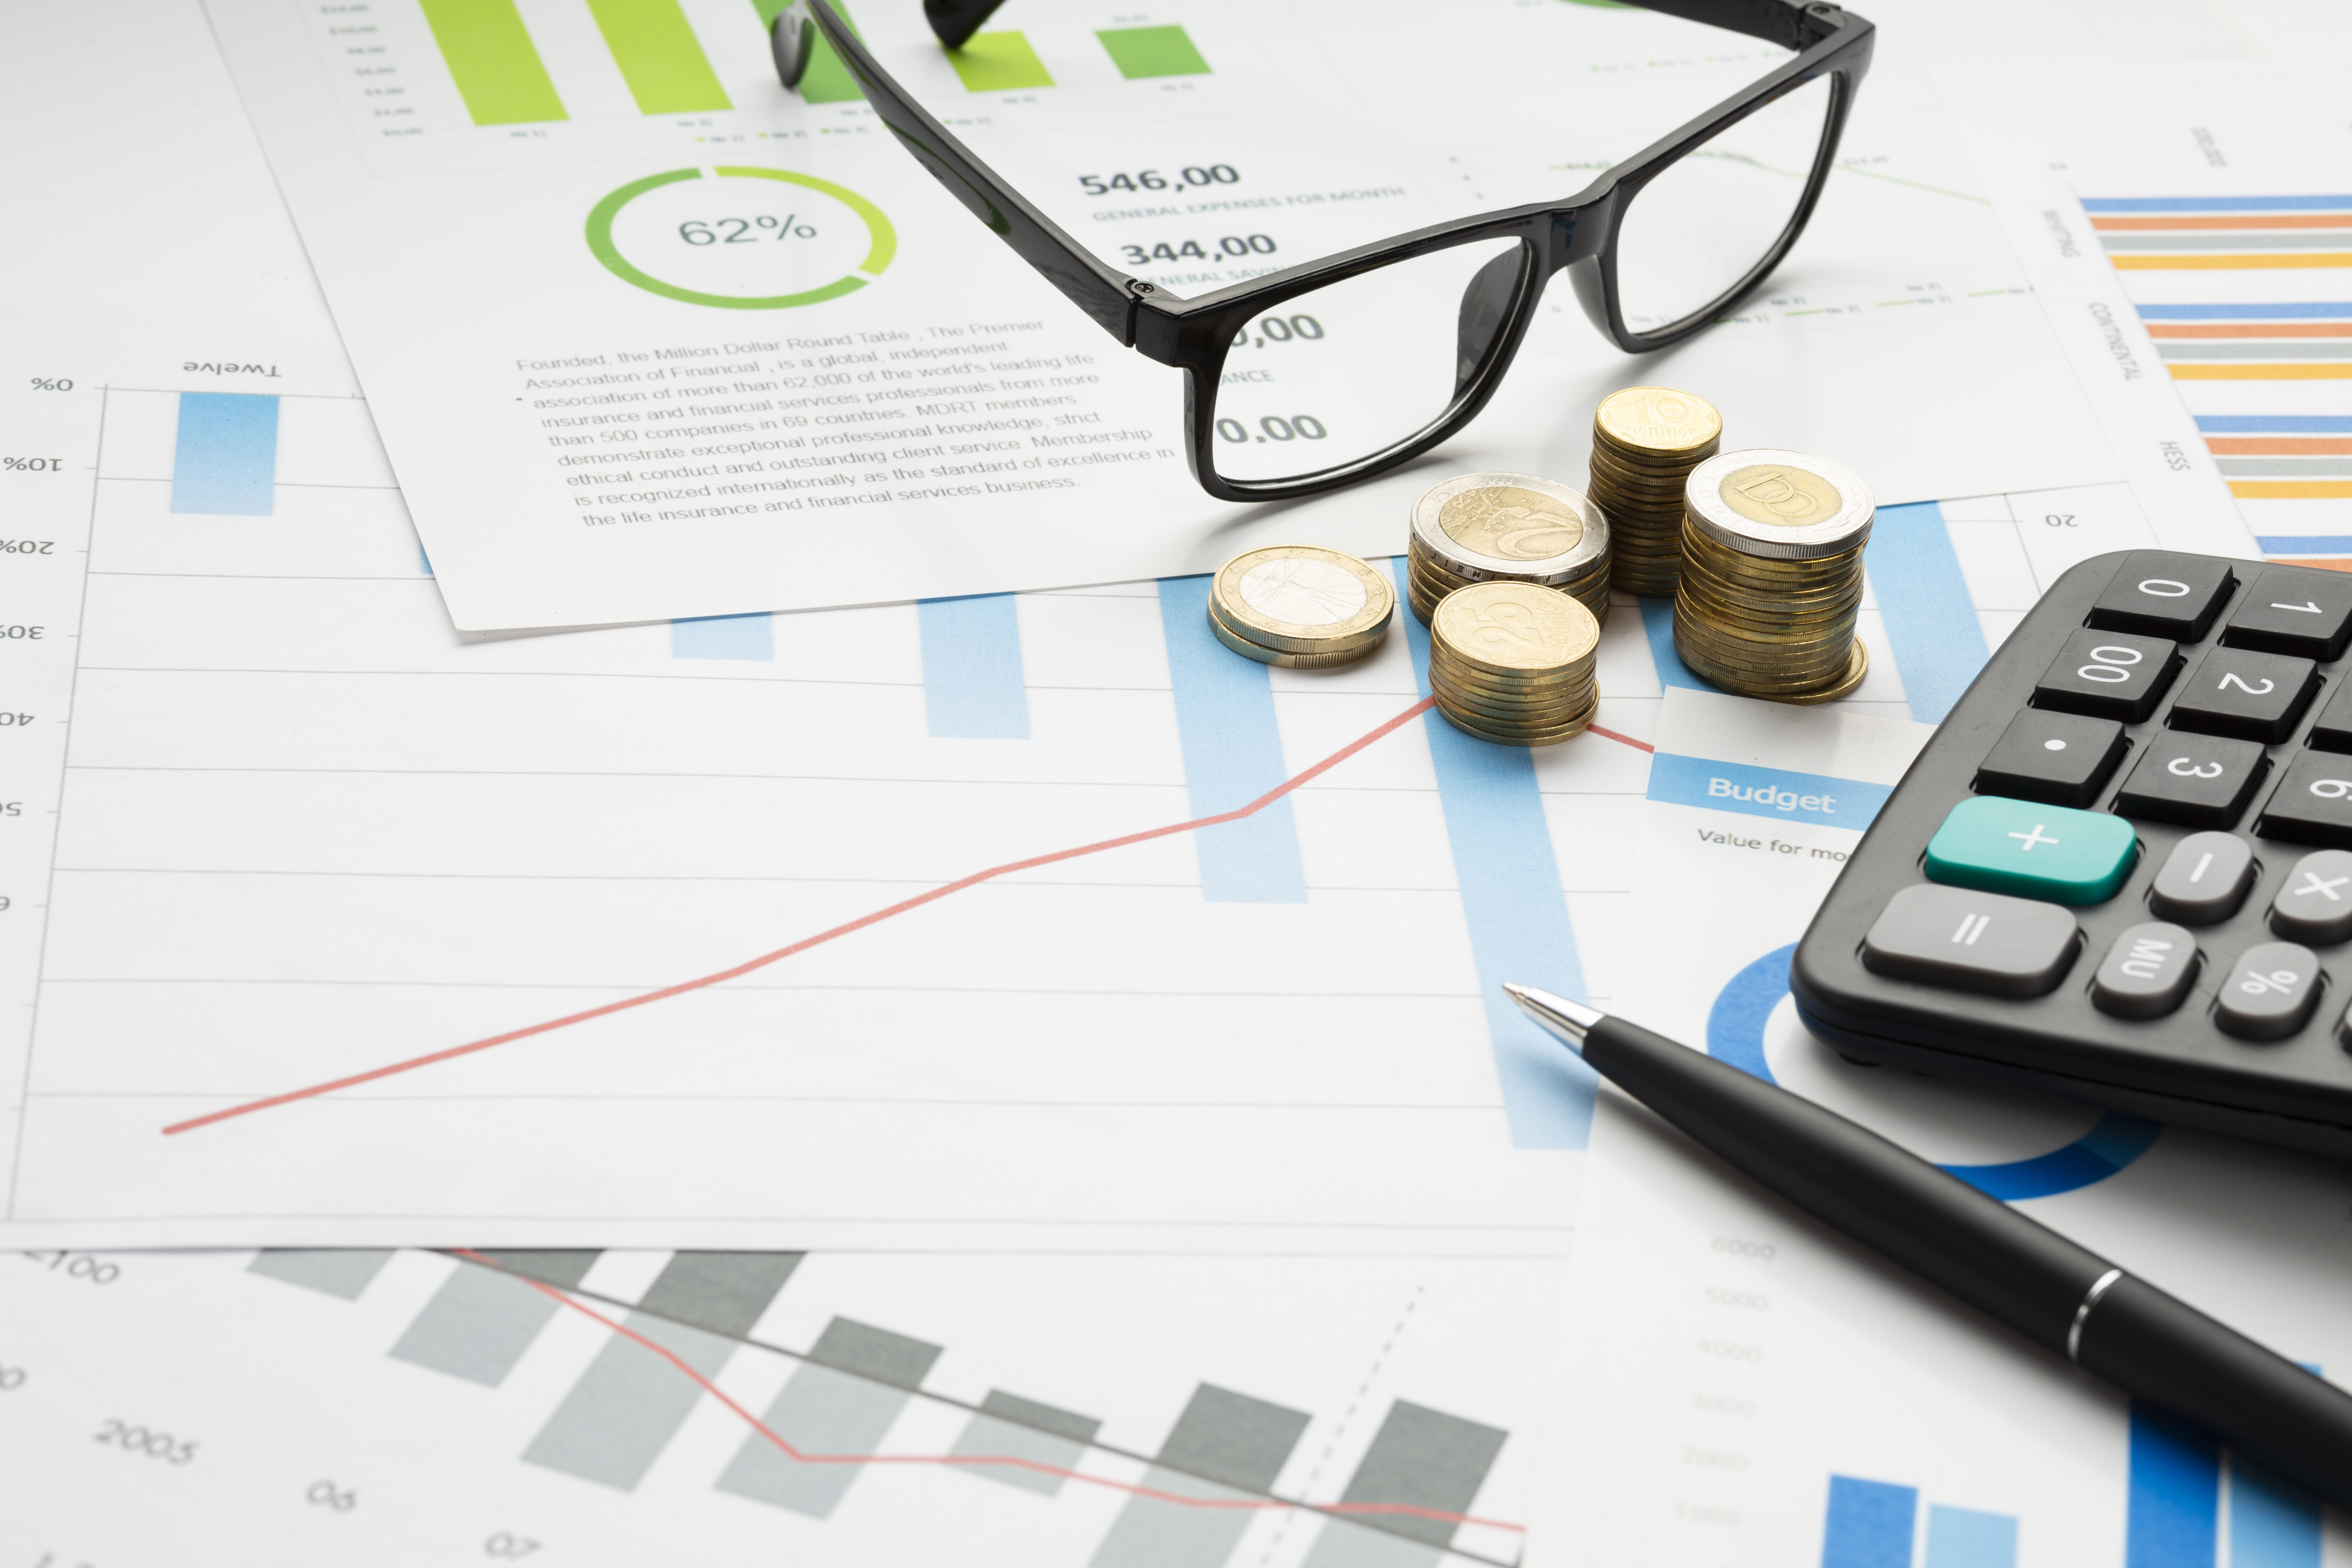 Báo cáo kết quả kinh doanh - đọc hiểu và phân tích các chỉ số tài chính cơ bản.